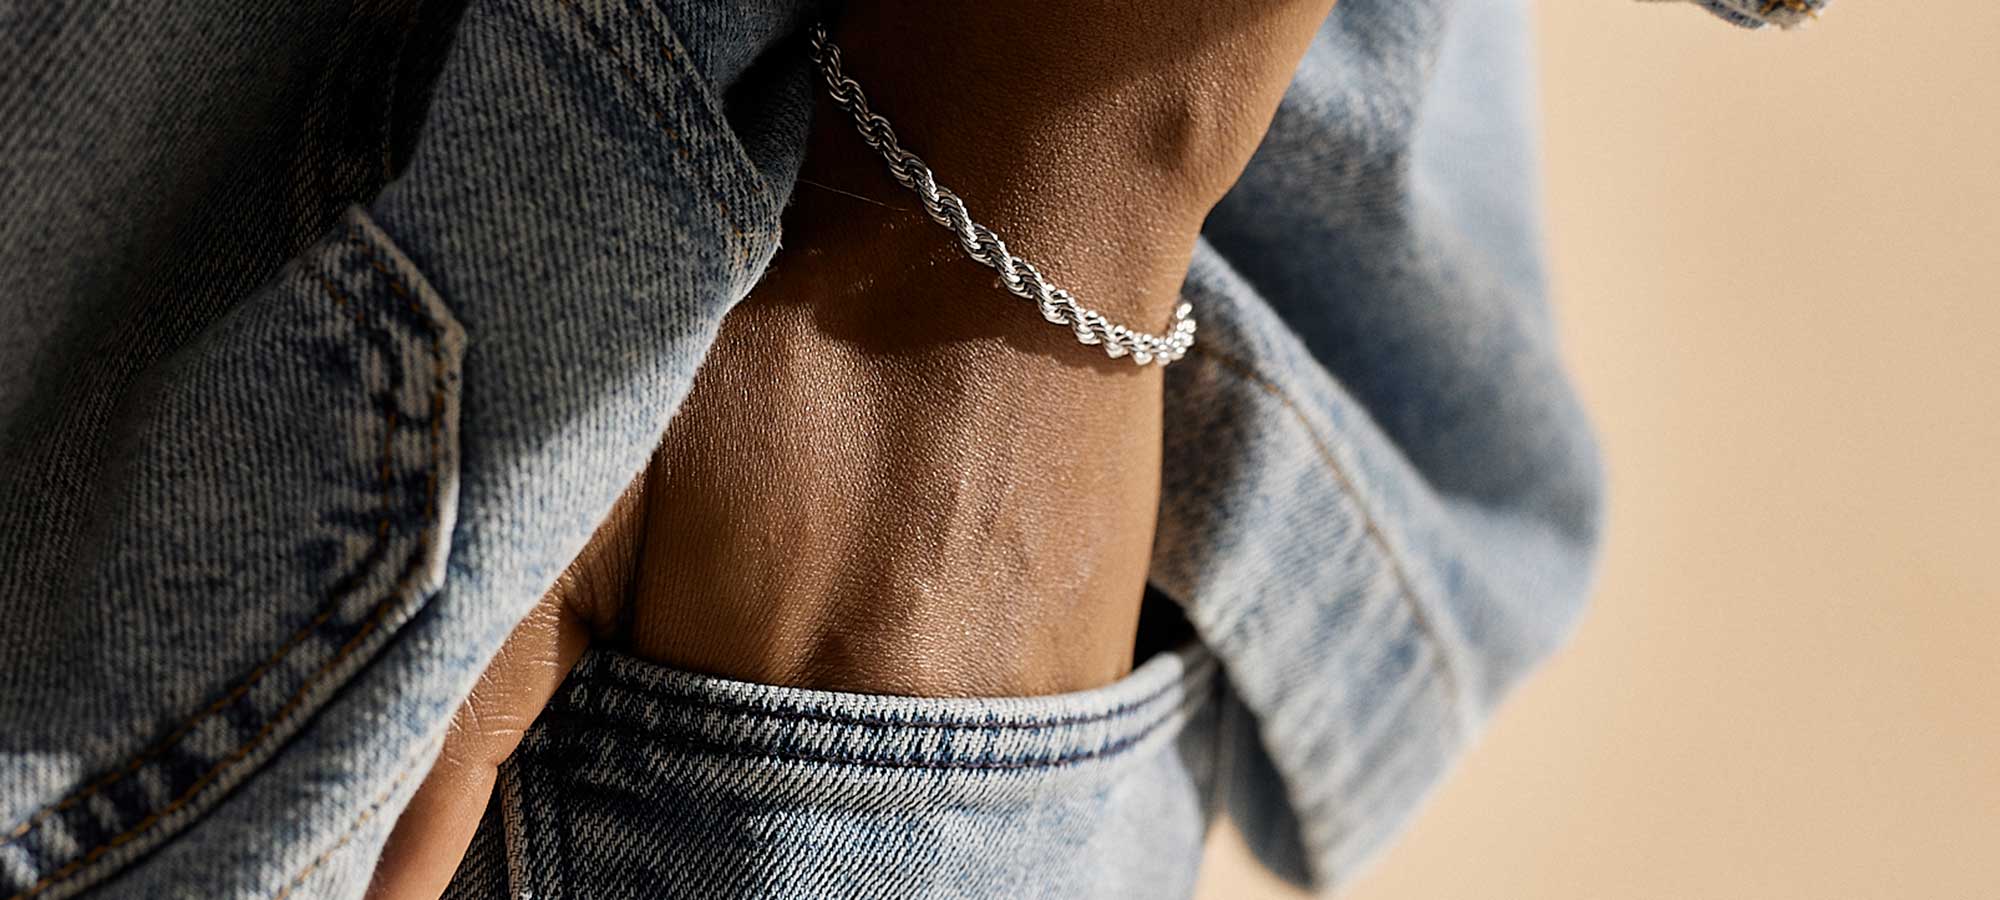 Skin friendly bracelets for men